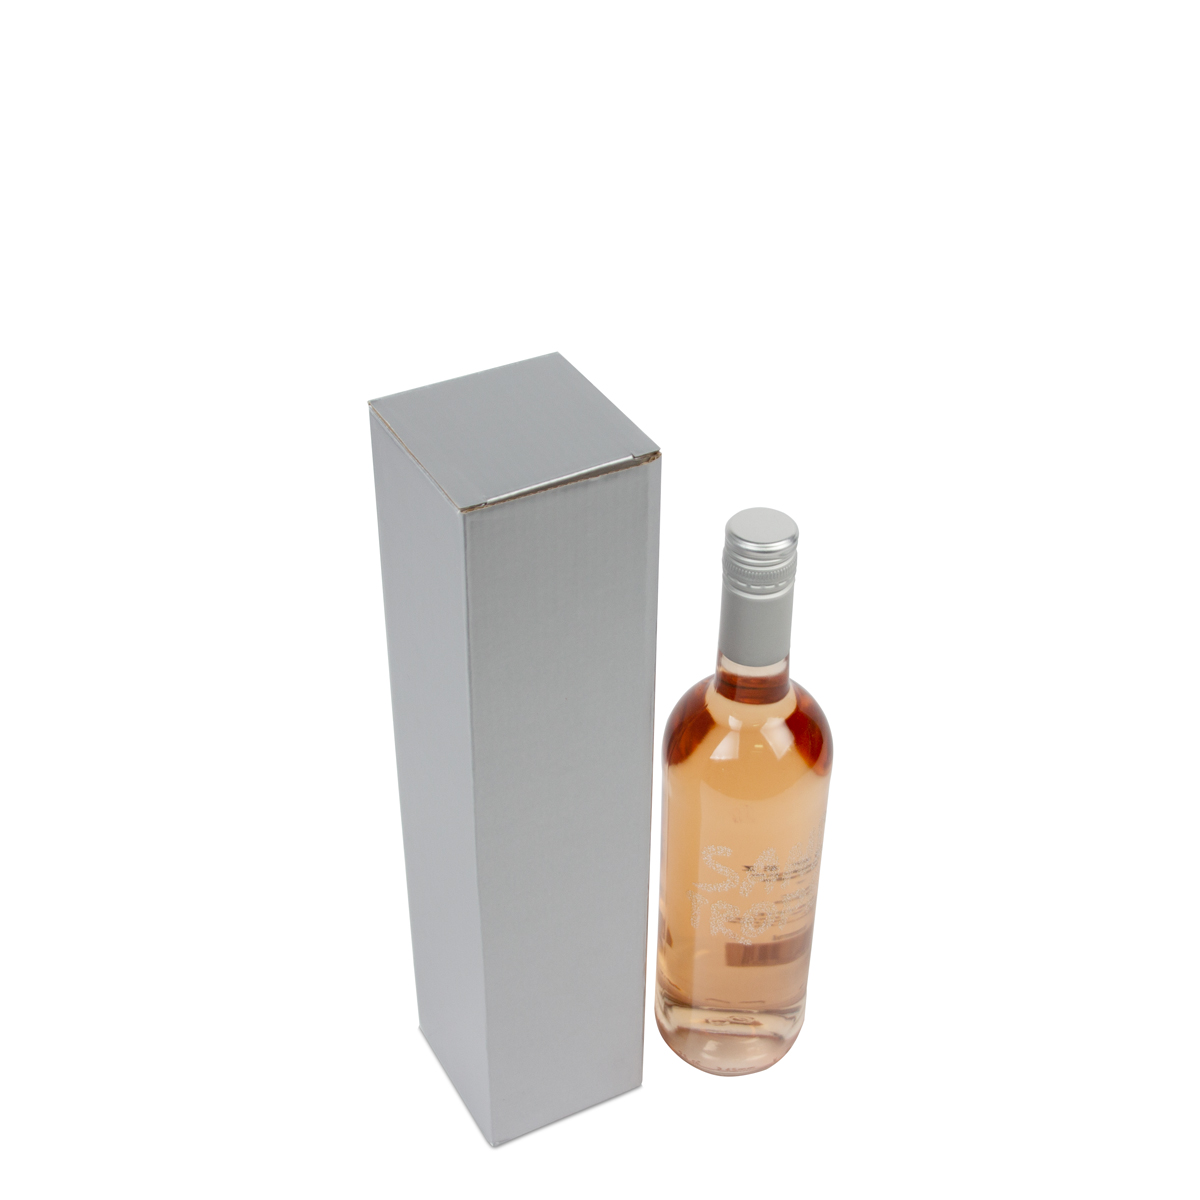 Cardboard wine bottle boxes